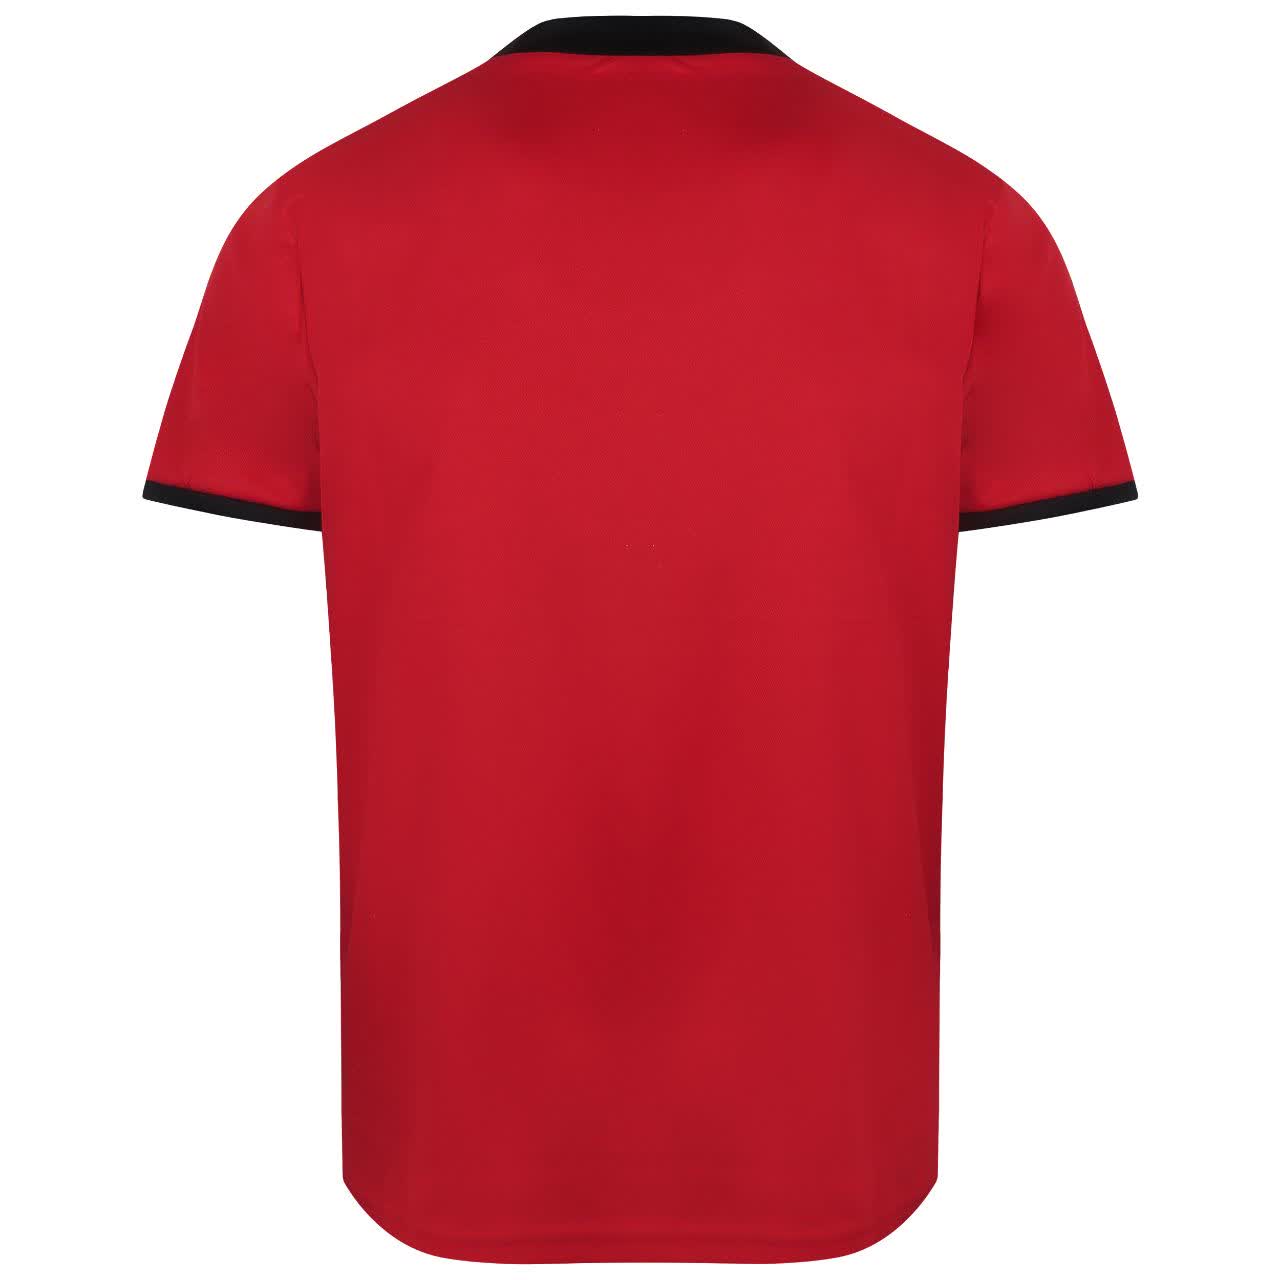 ست تی شرت و شلوارک ورزشی مردانه کالای ورزشی پروین مدل a.s.i.x.6 رنگ قرمز -  - 5